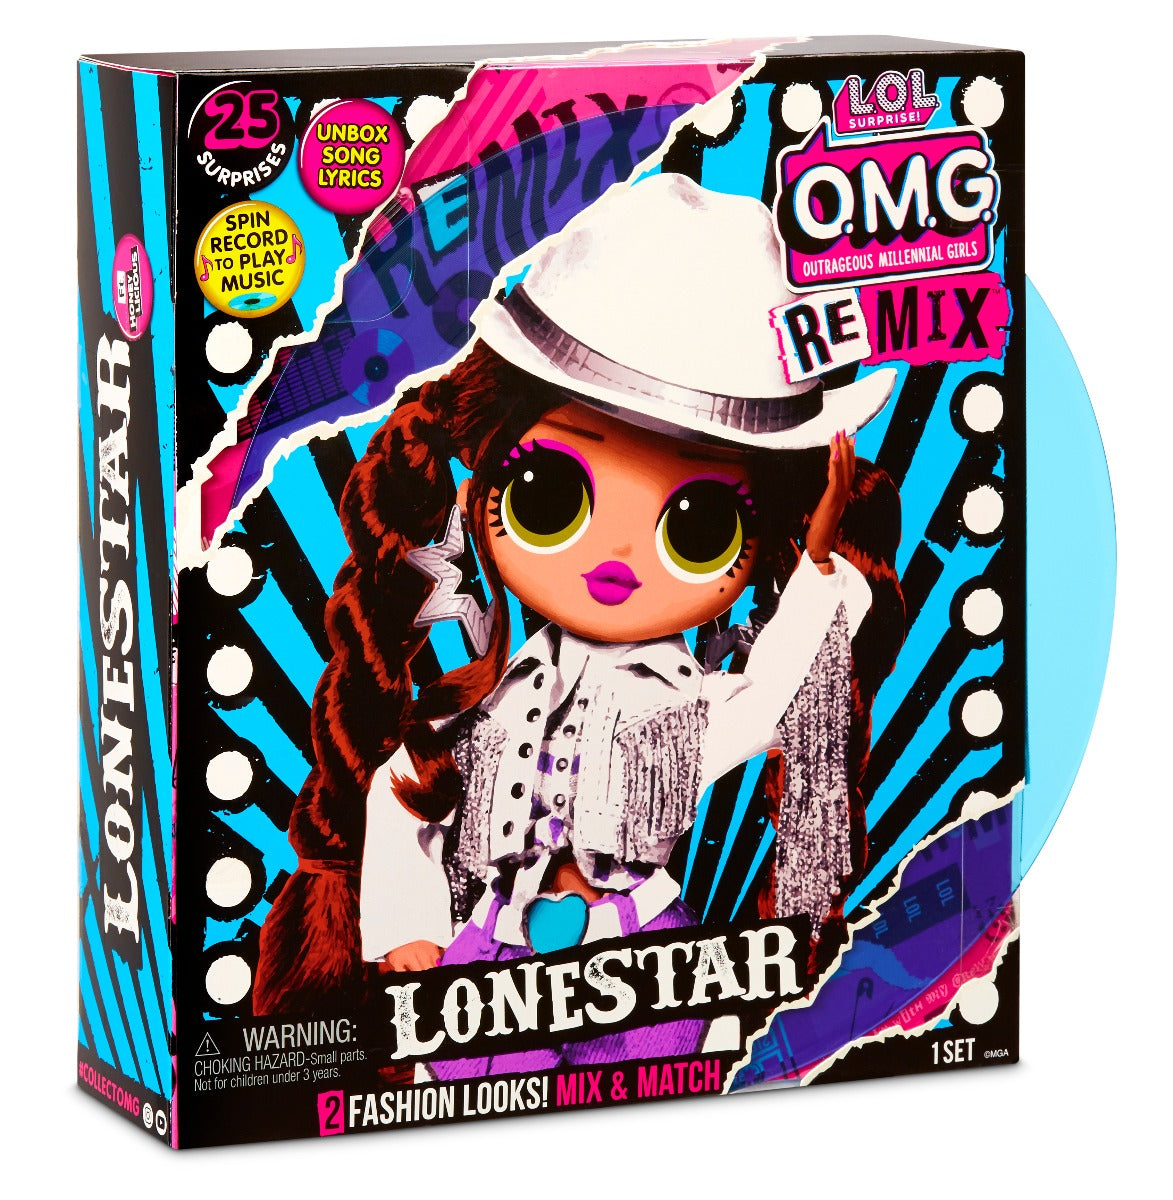 Búp bê thời trang OMG Remix- Lonestar